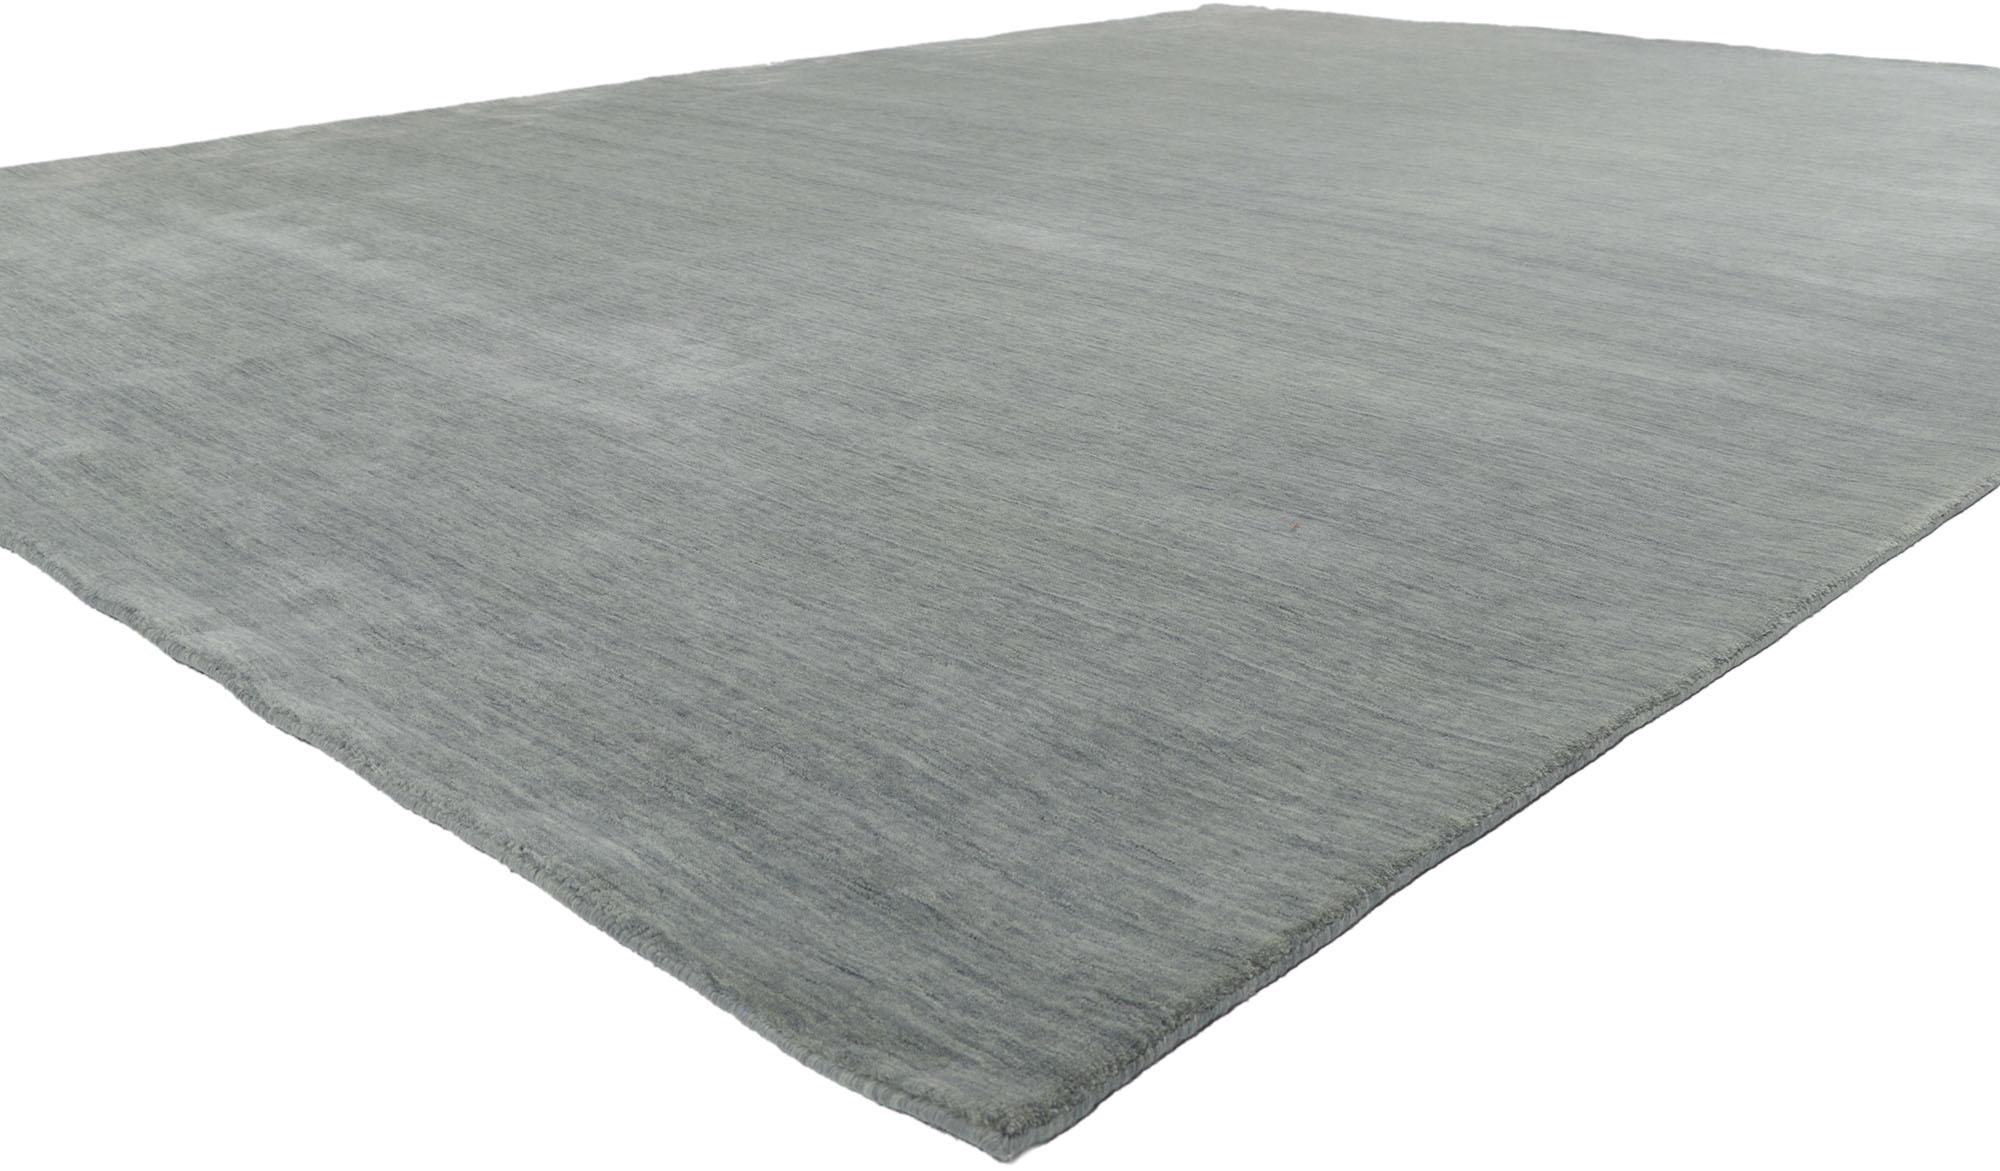 30738 New Contemporary grey area rug with Modern Style 009'10 x 13'00. D'une beauté sans effort, combinée à la simplicité et au style moderne, ce tapis indien contemporain en laine tissée à la main procure une sensation de confort douillet sans